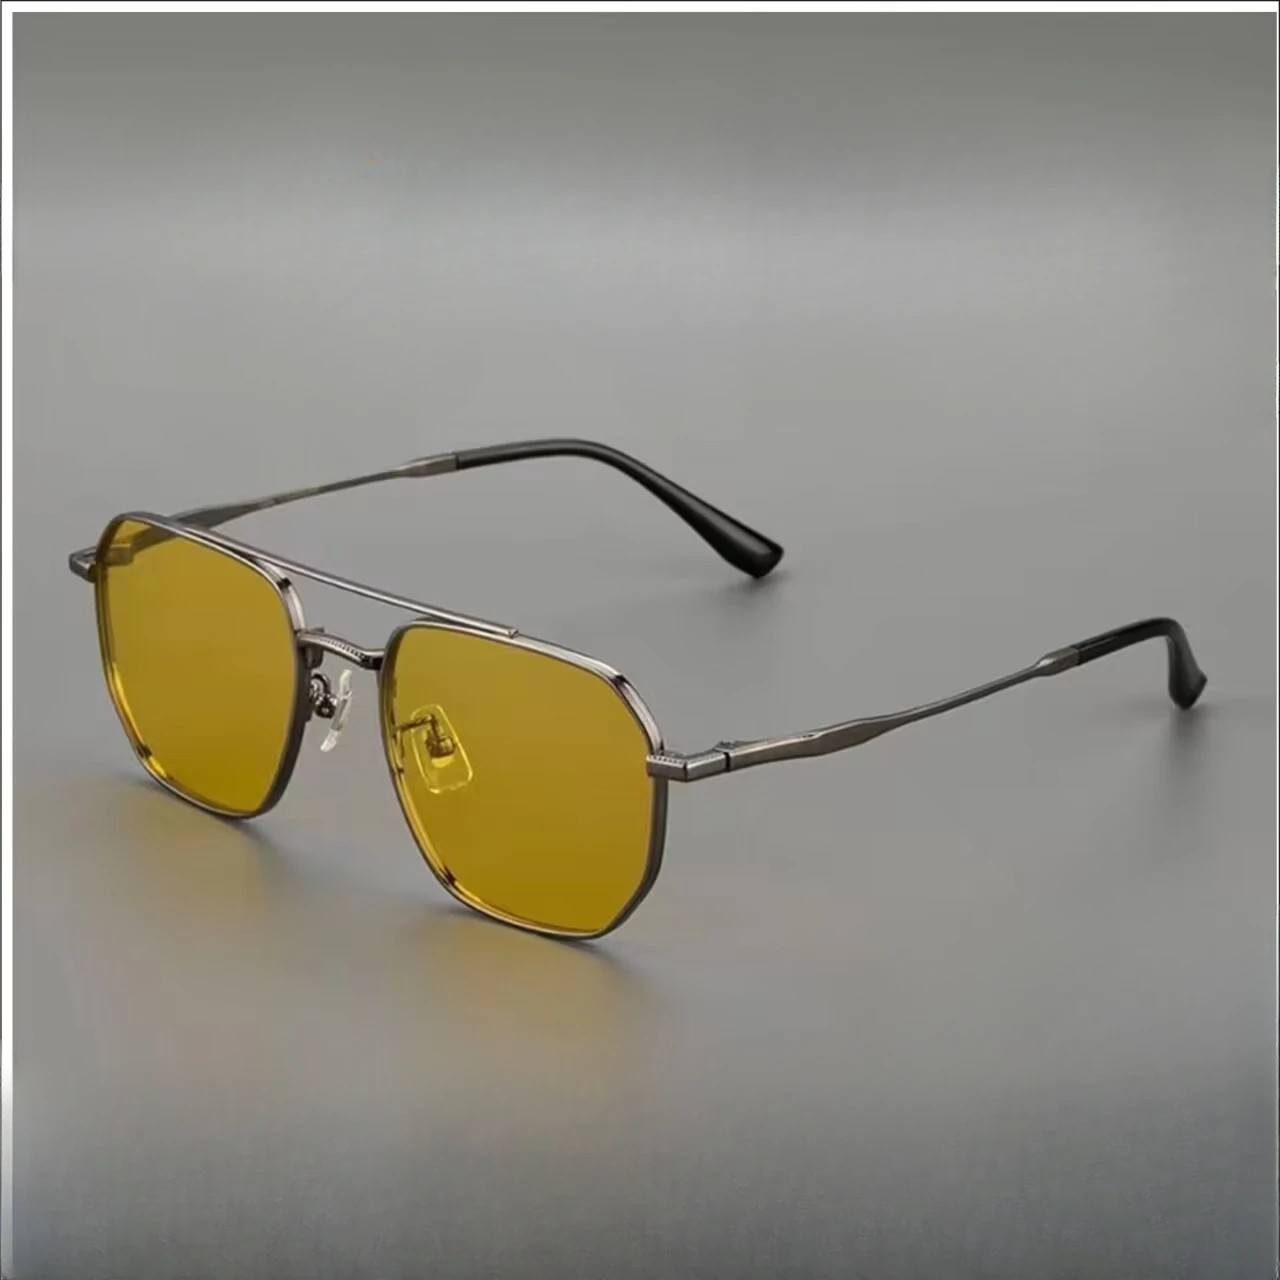 

Pure Titanium Sunglasses Men's Double Beam Driving Glasses UV Resistant Classic Retro Sunglasses Pure Titanium Polarizing Lenses